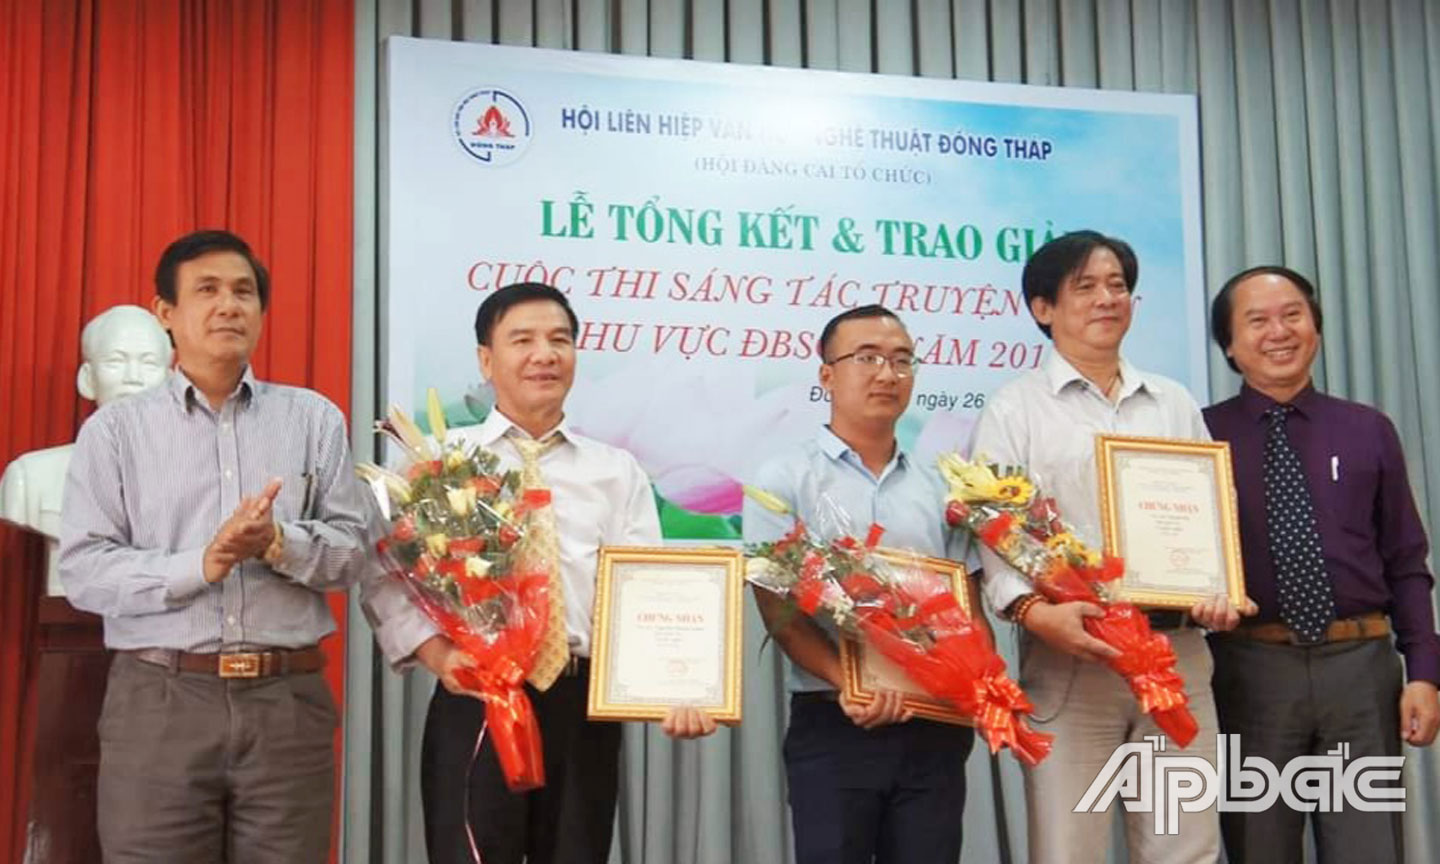 Tác giả Nguyễn Thanh Xuân (thứ 2 từ trái qua) nhận giải Ba.